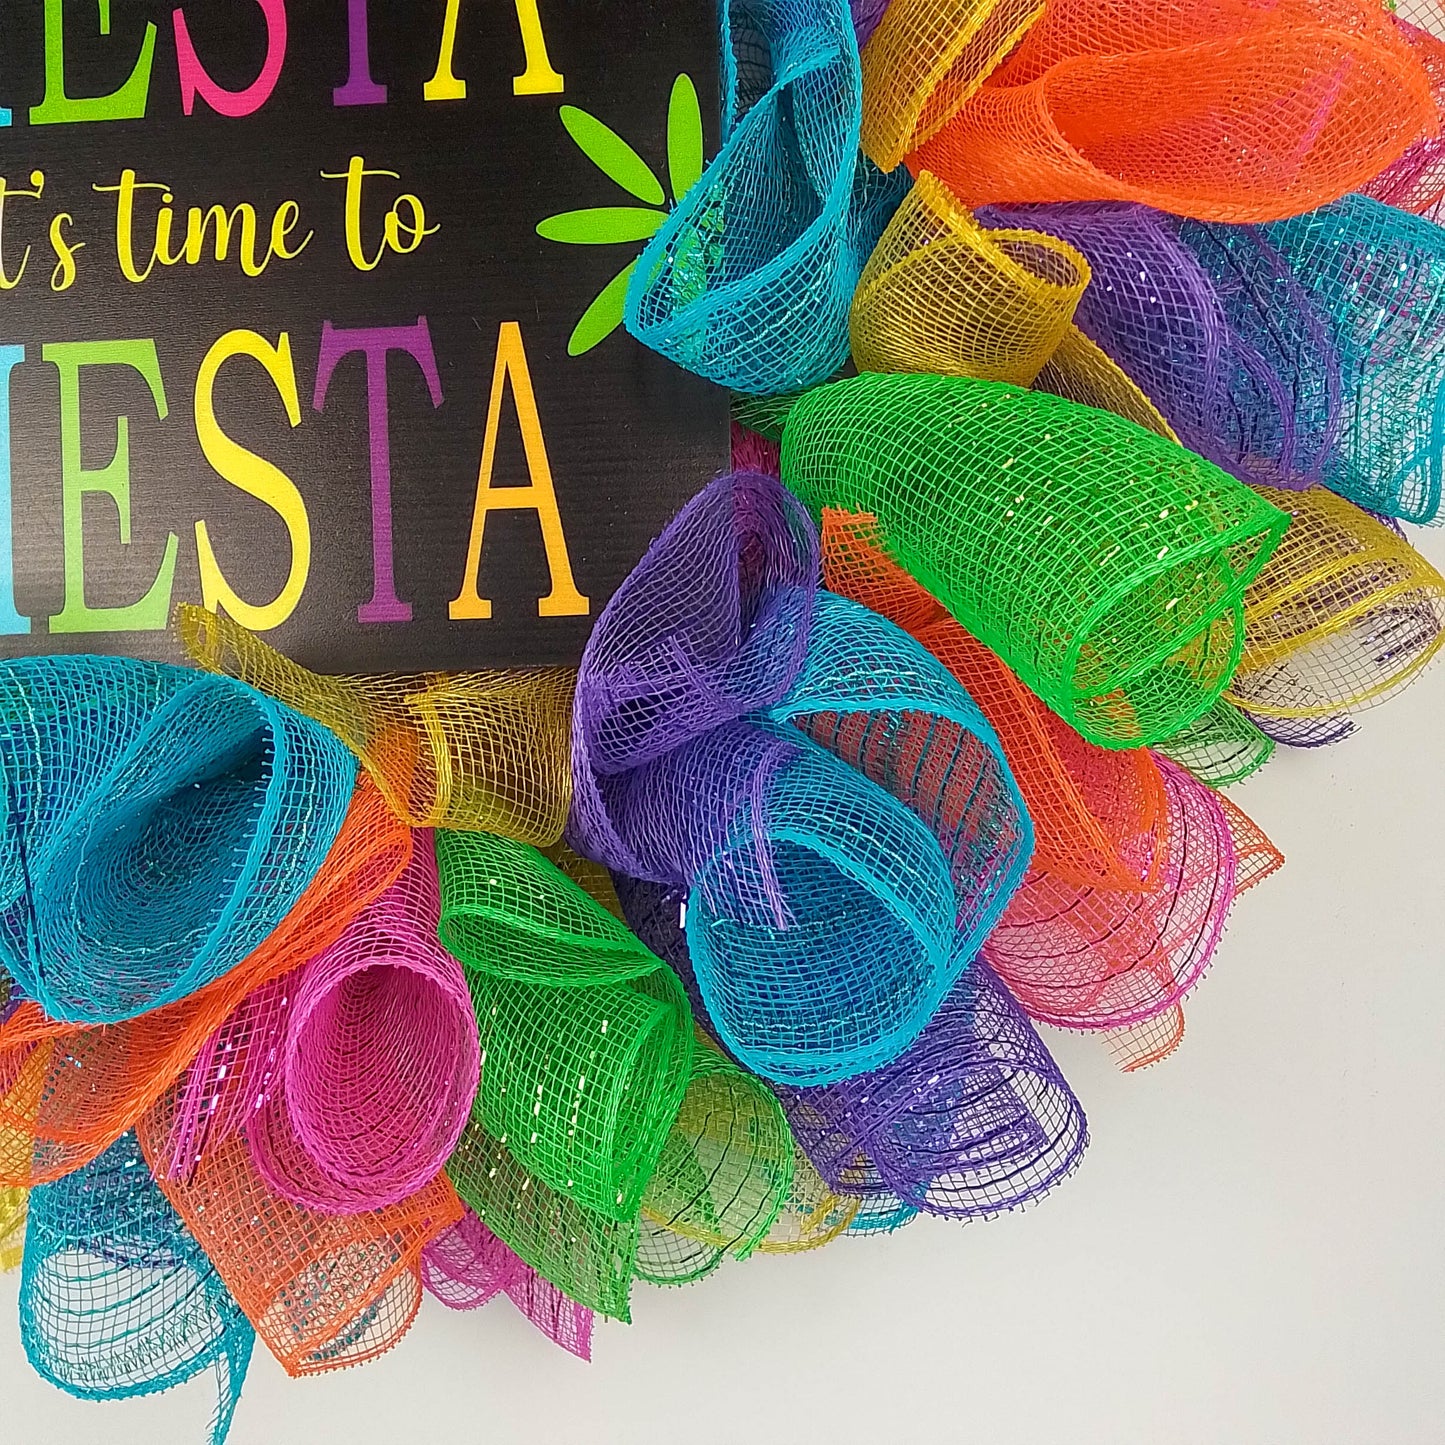 Bright Fiesta Party Wreath - Colorful Birthday Decor - Versatile Indoor/Outdoor Cinco de Mayo Decoration